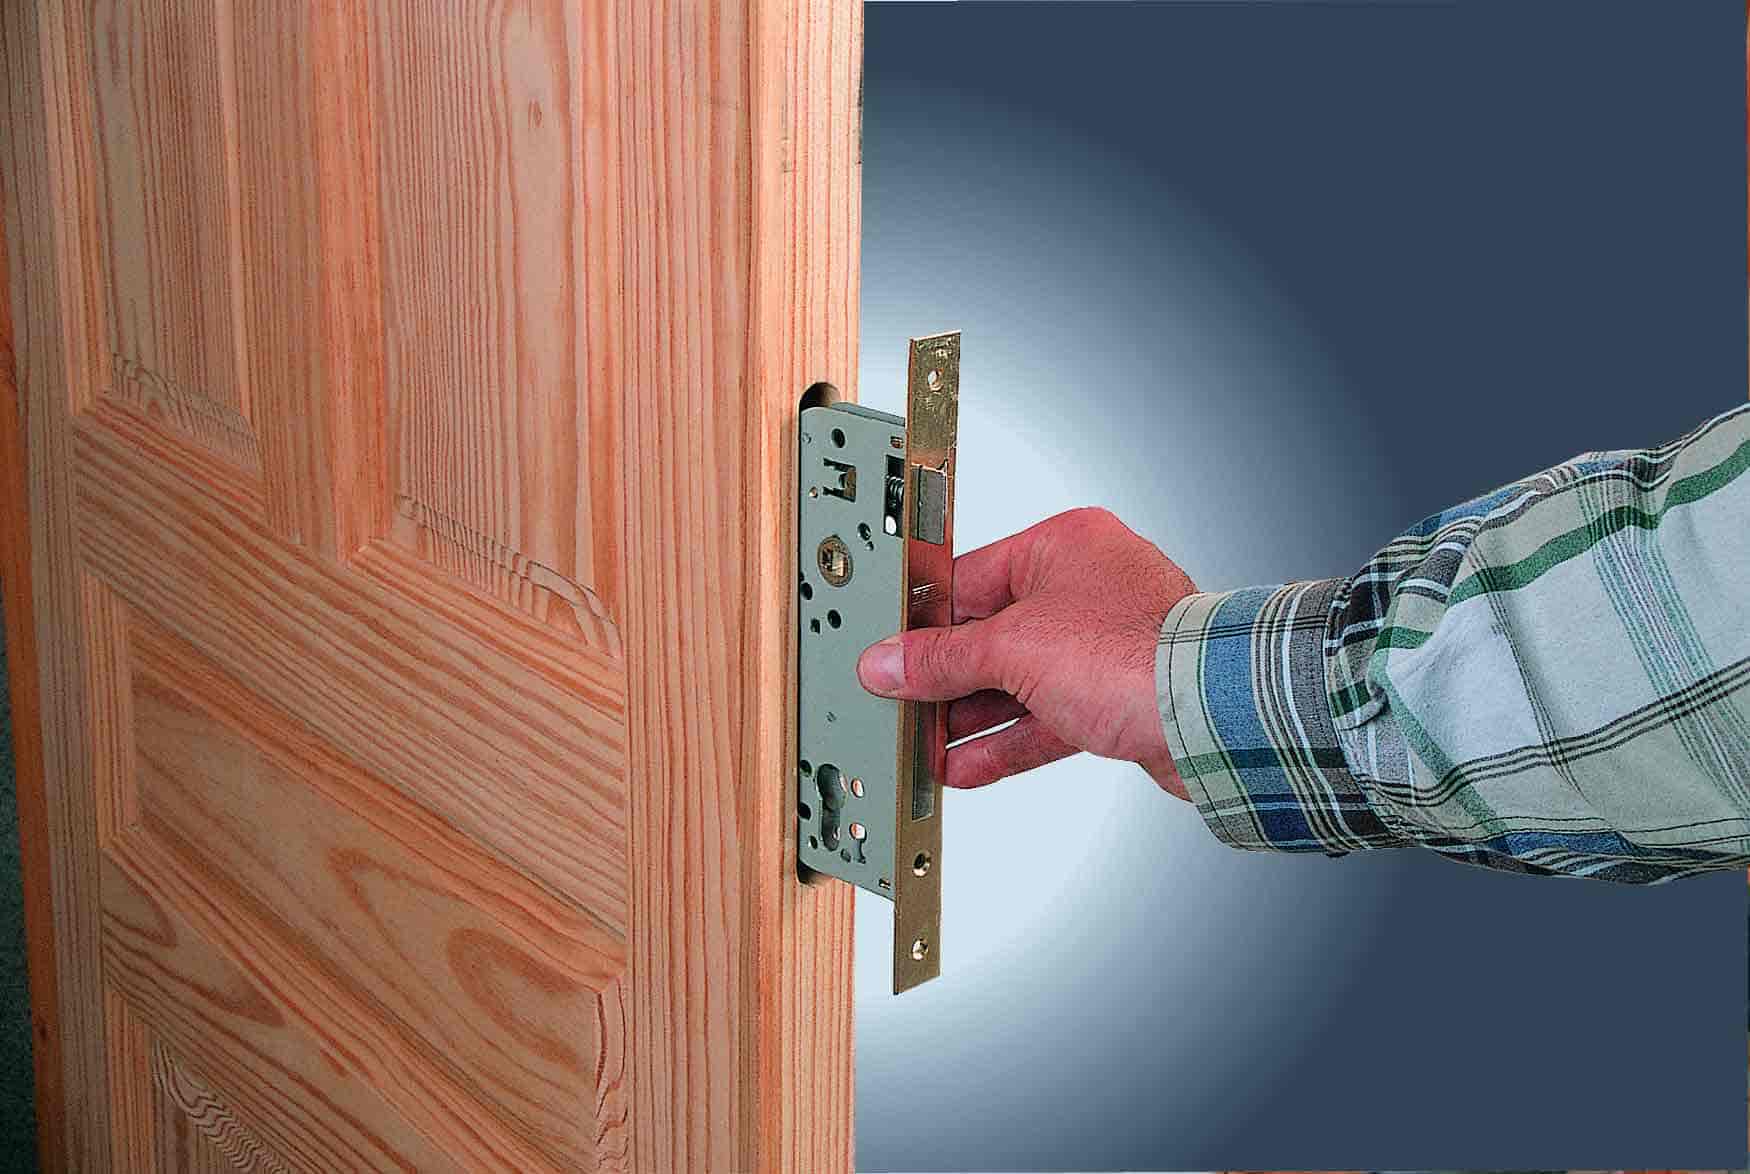 Инструкция: установка ручки-защелки («кноба») на межкомнатную дверь своими руками